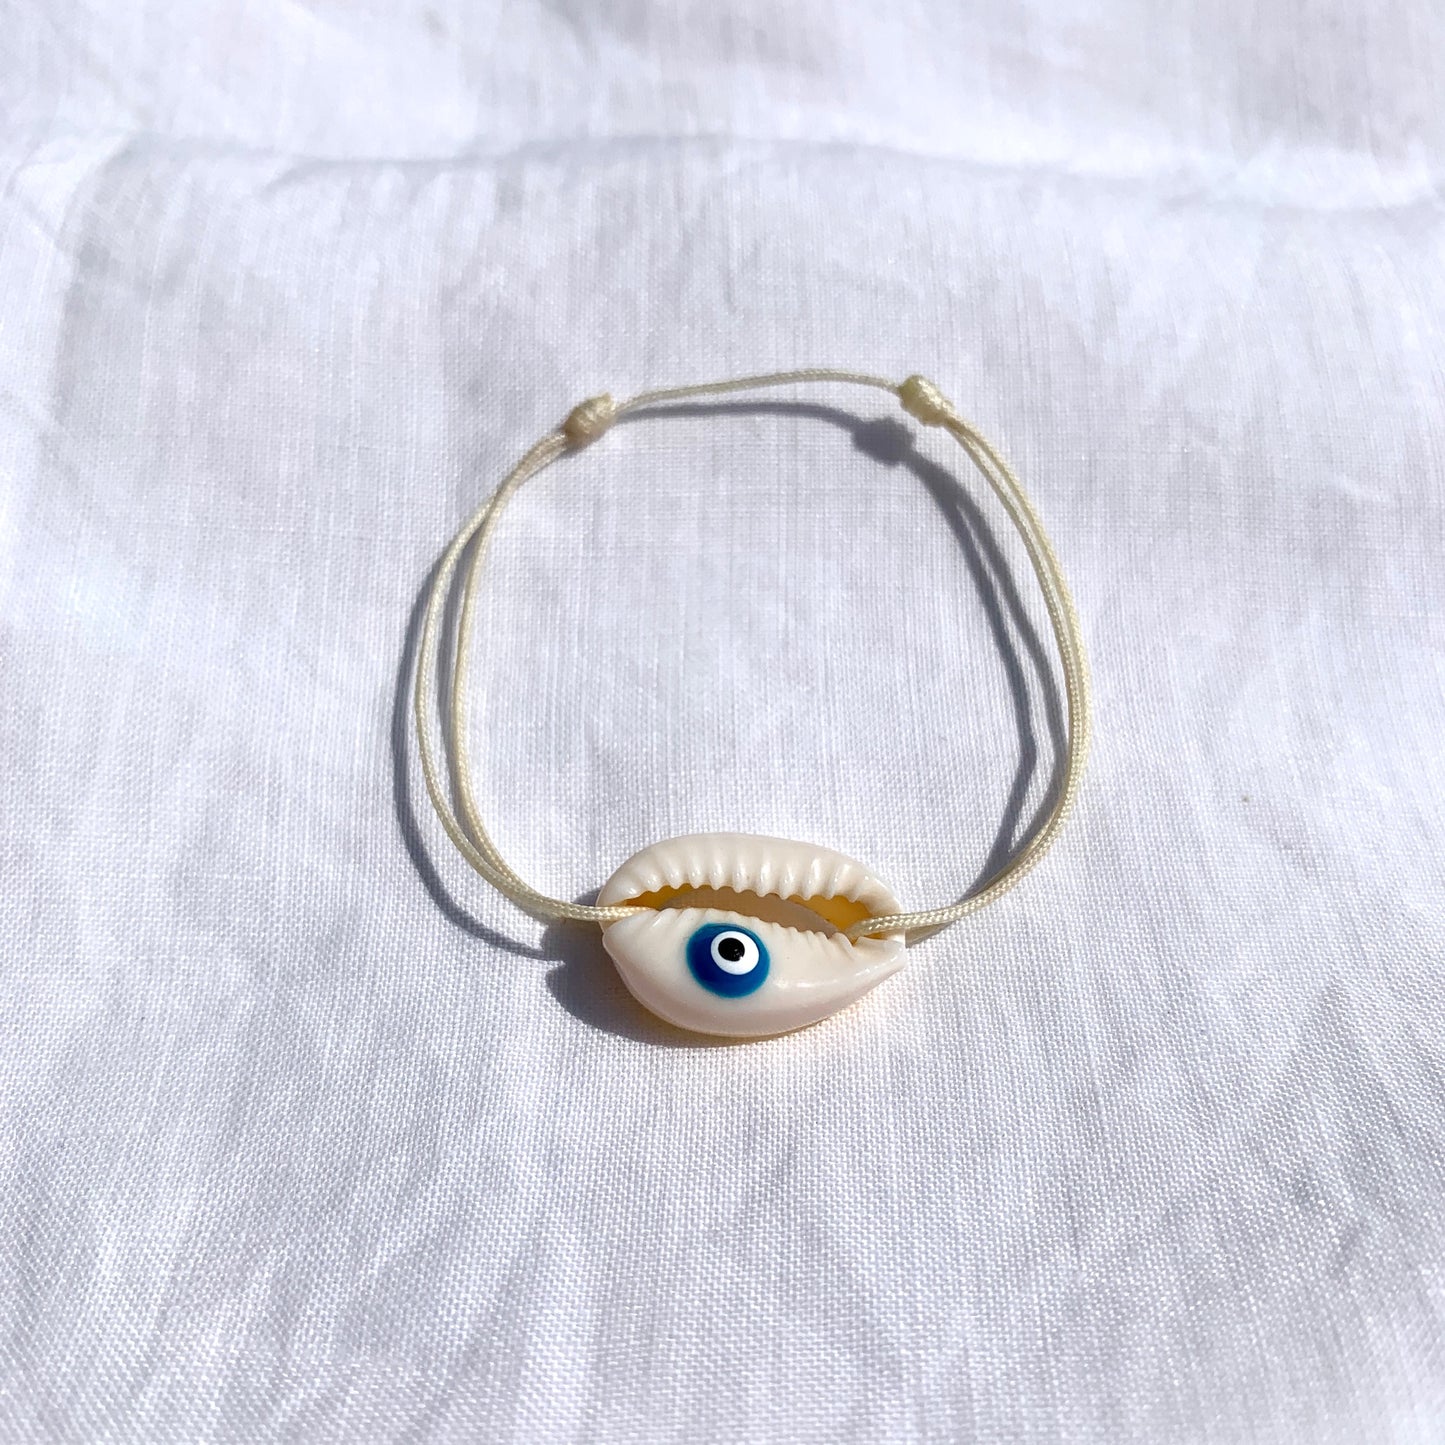 blue shell eye bracelet